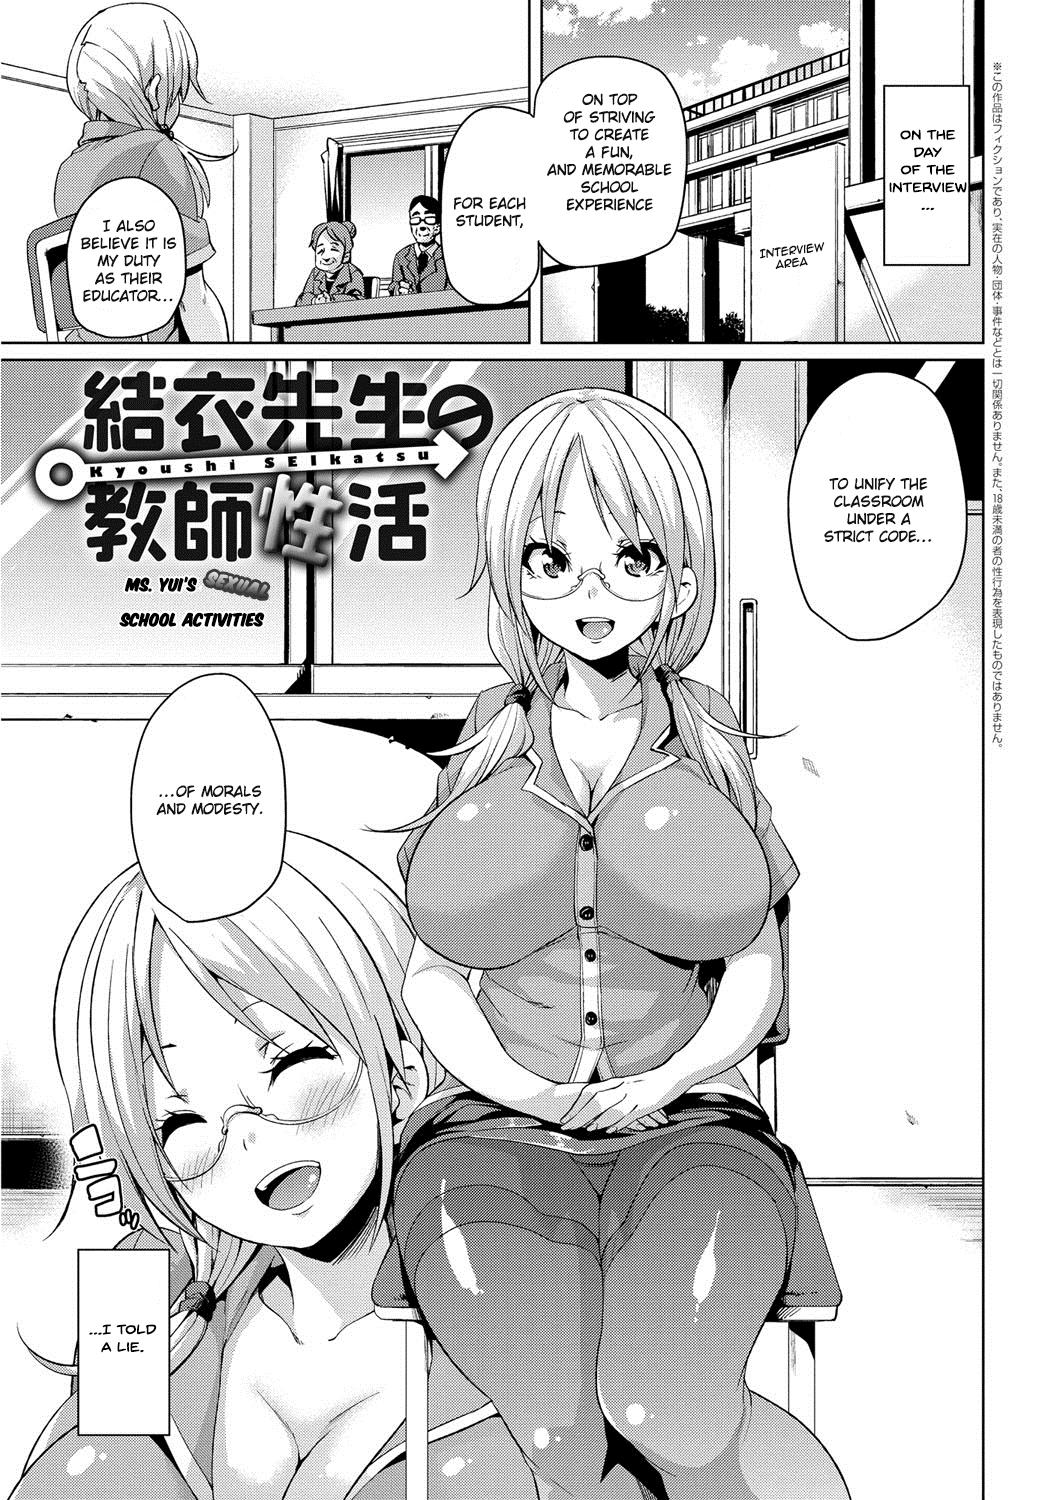 Yui Sensei no Kyoushi Seikatsu | Ms. Yui's Sexual School Activities 0